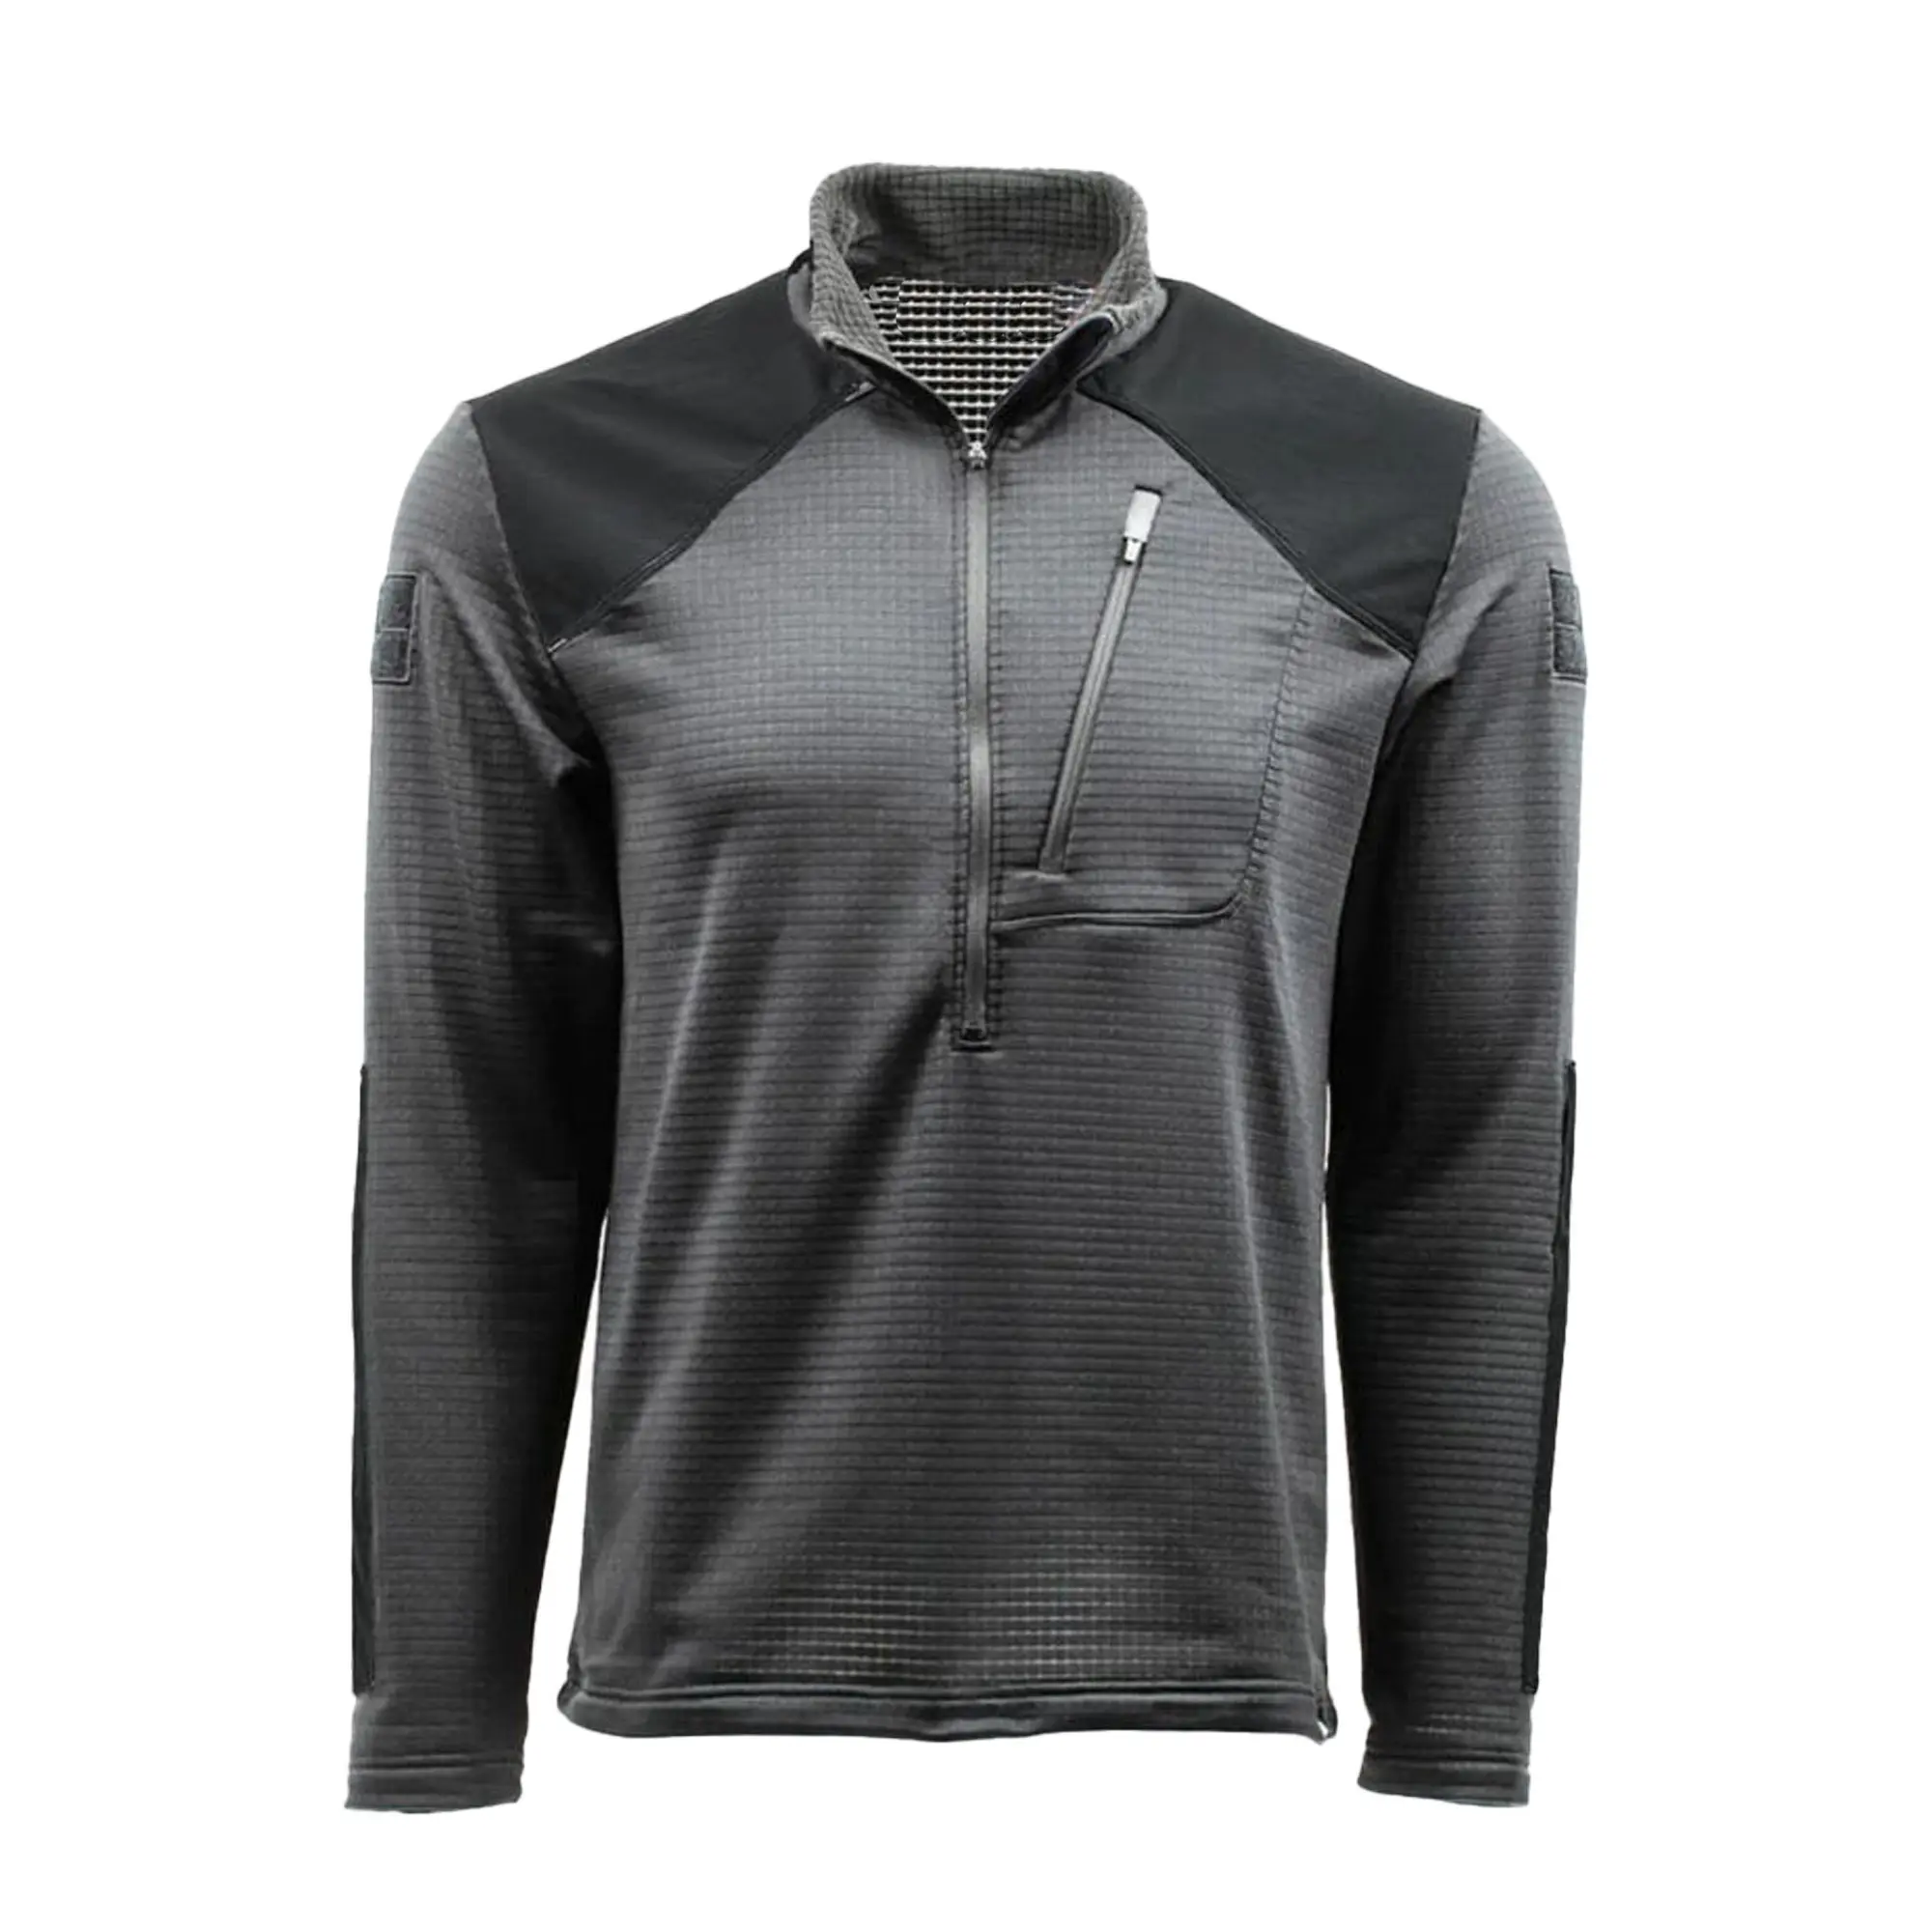 Camisa de combate com zíper cinza para homens, jaqueta e capuz personalizado estilo combate, tecido micro de secagem rápida de 4 vias, de qualidade premium